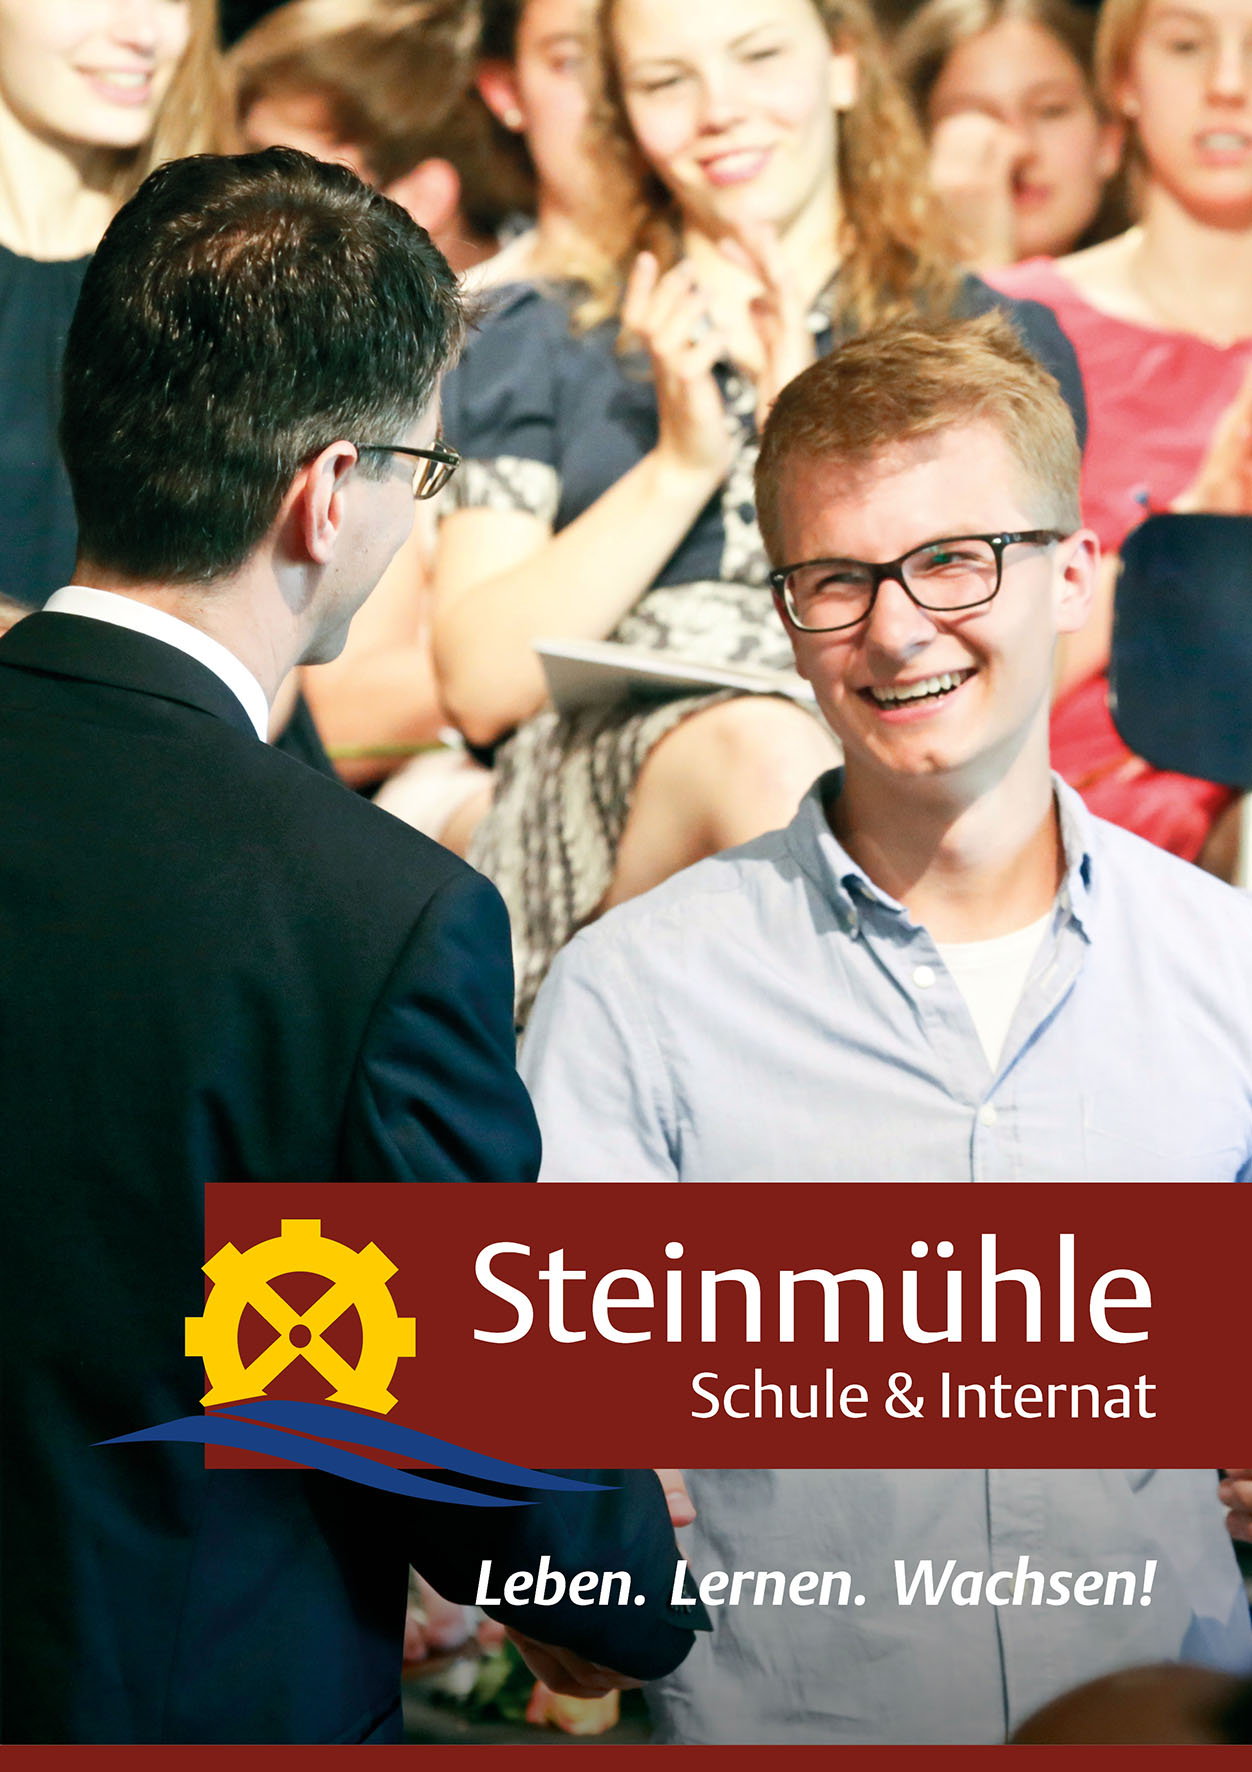 Steinmühle - Schule & Internat